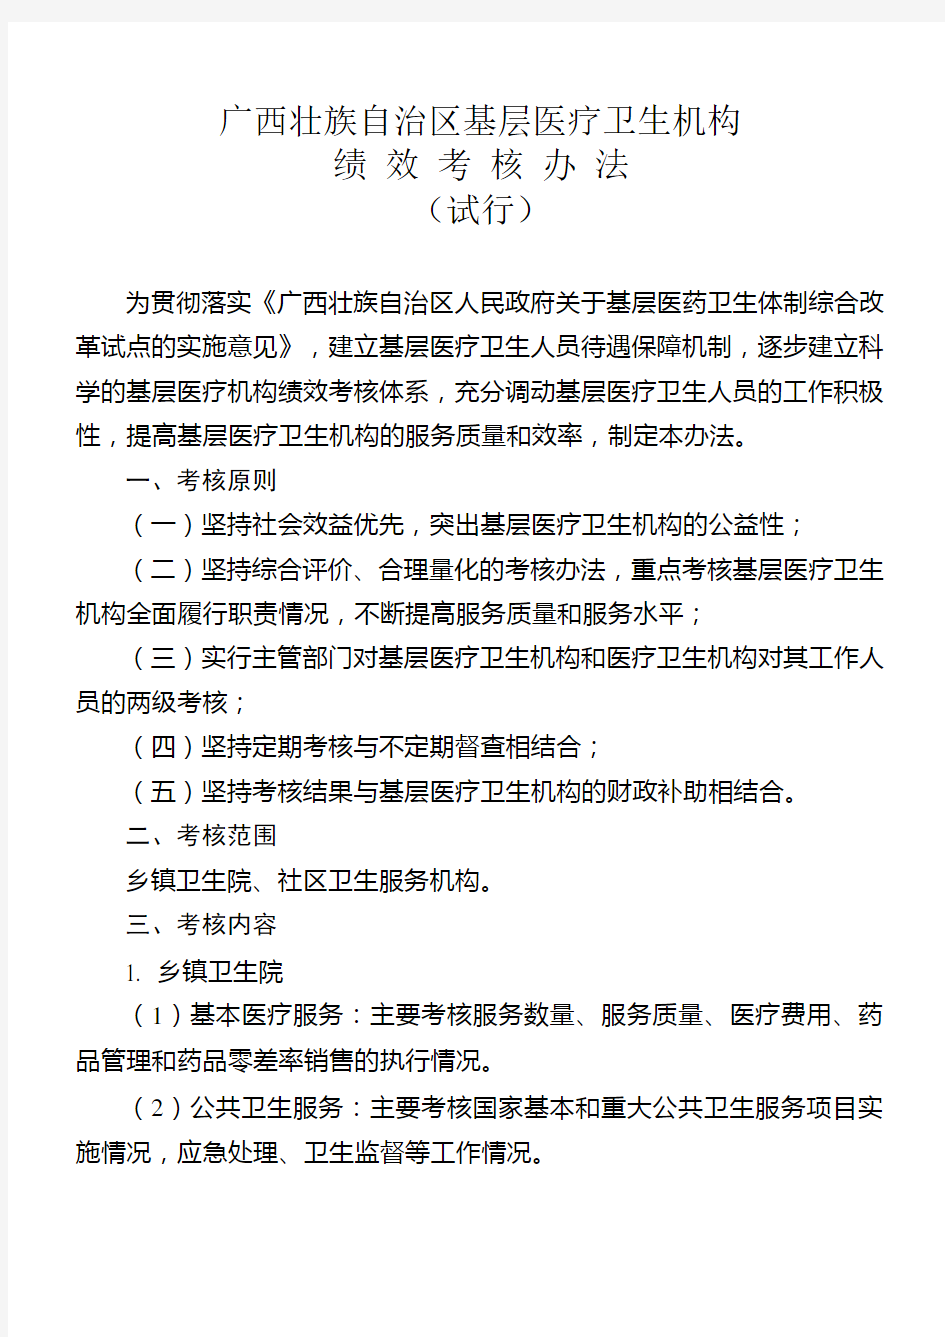 广西壮族自治区基层医疗卫生机构绩效考核办法(试行)